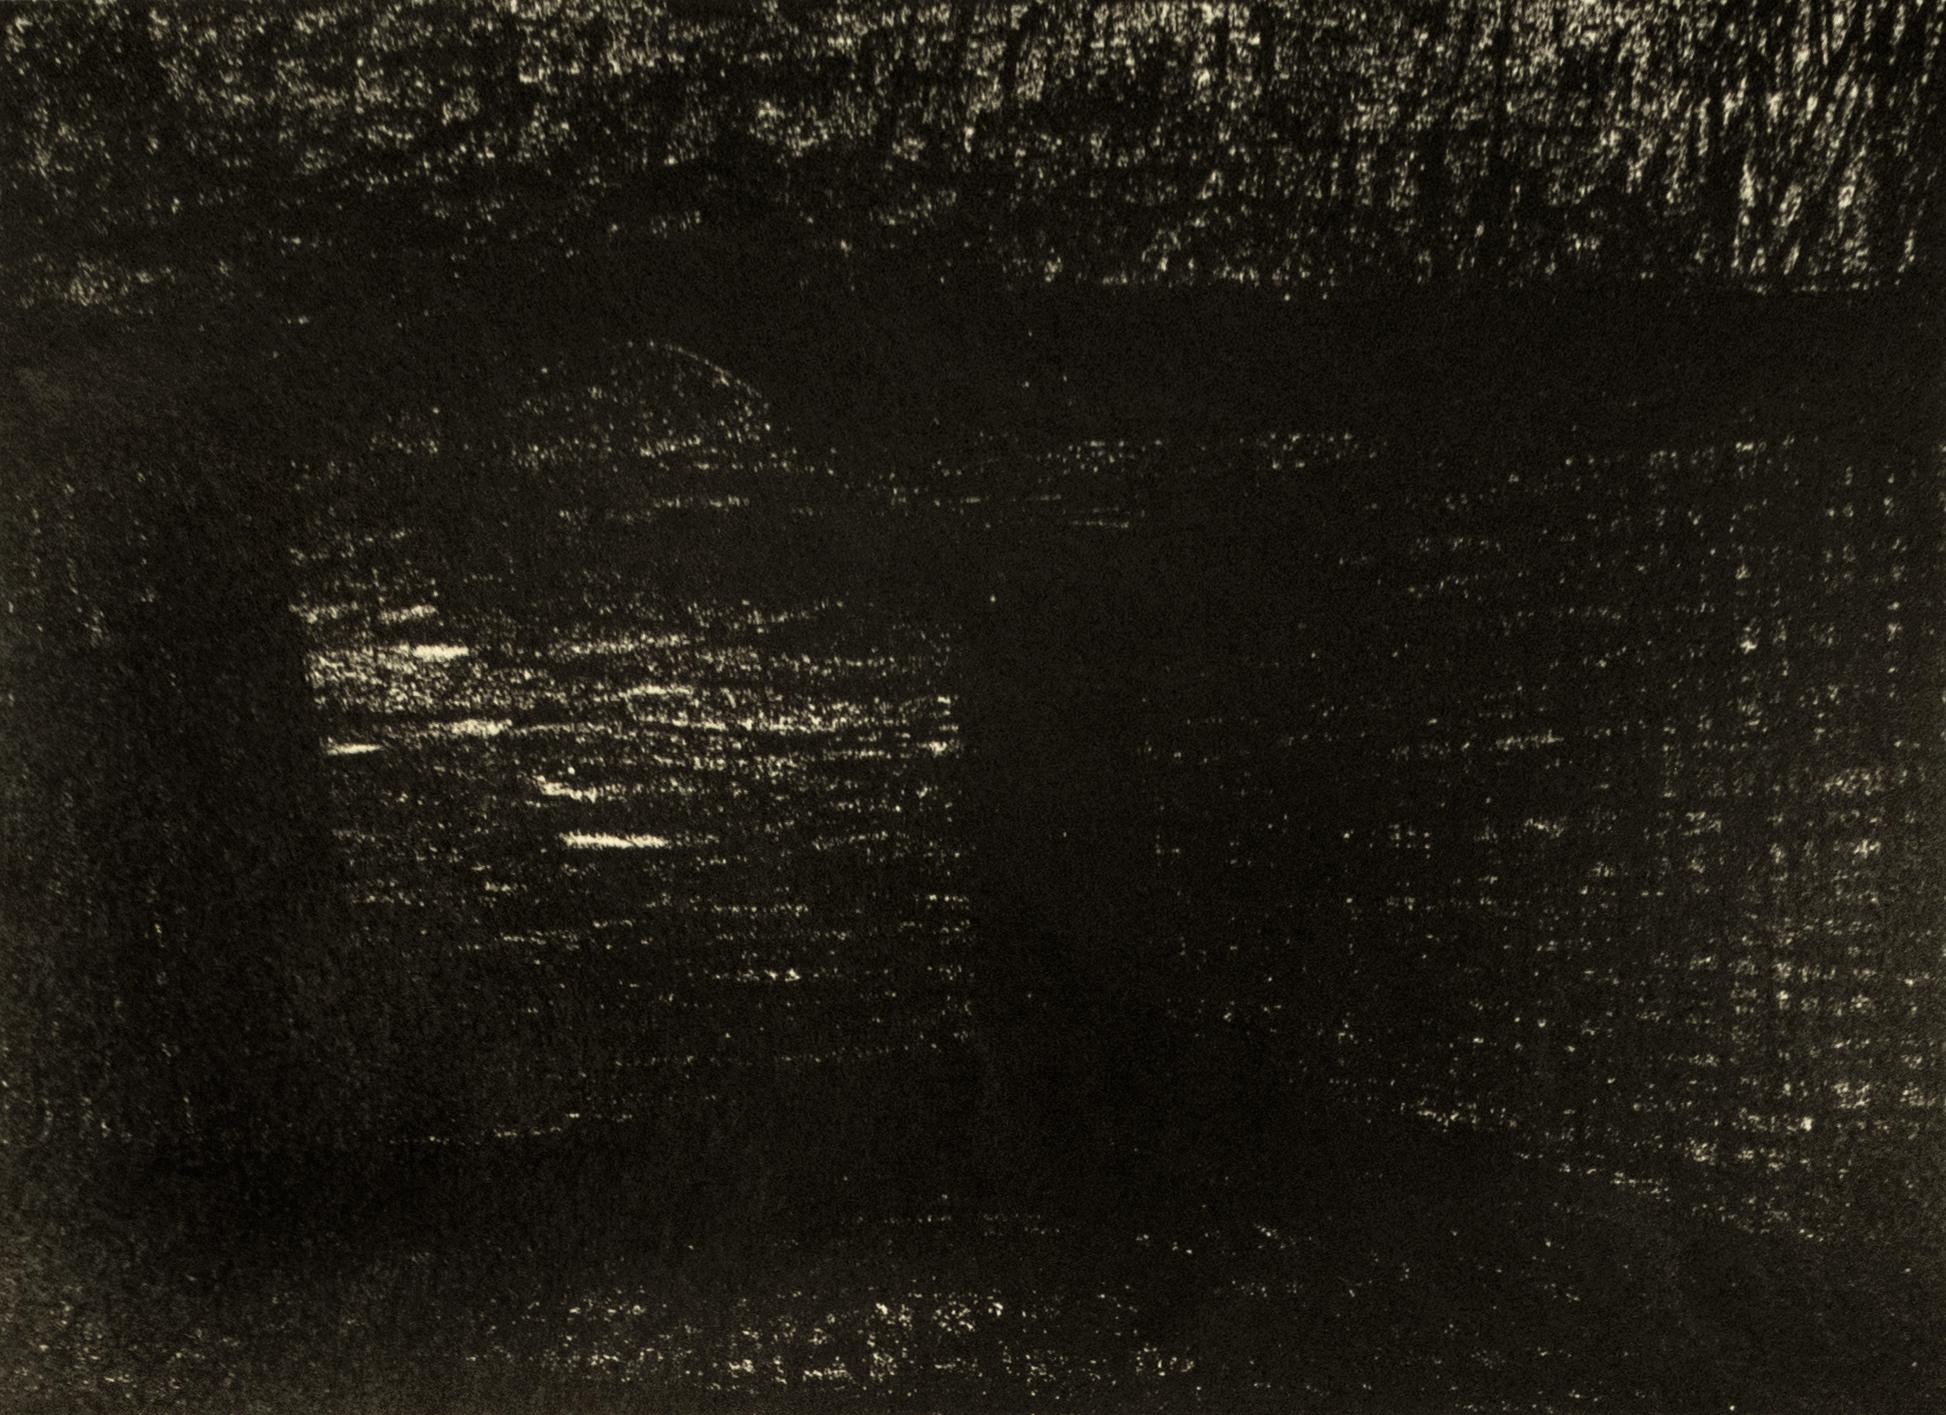 Bridge: abstrakte schwarze Zeichnung nach Auden-Gedicht und Yorkshire-Landschaft